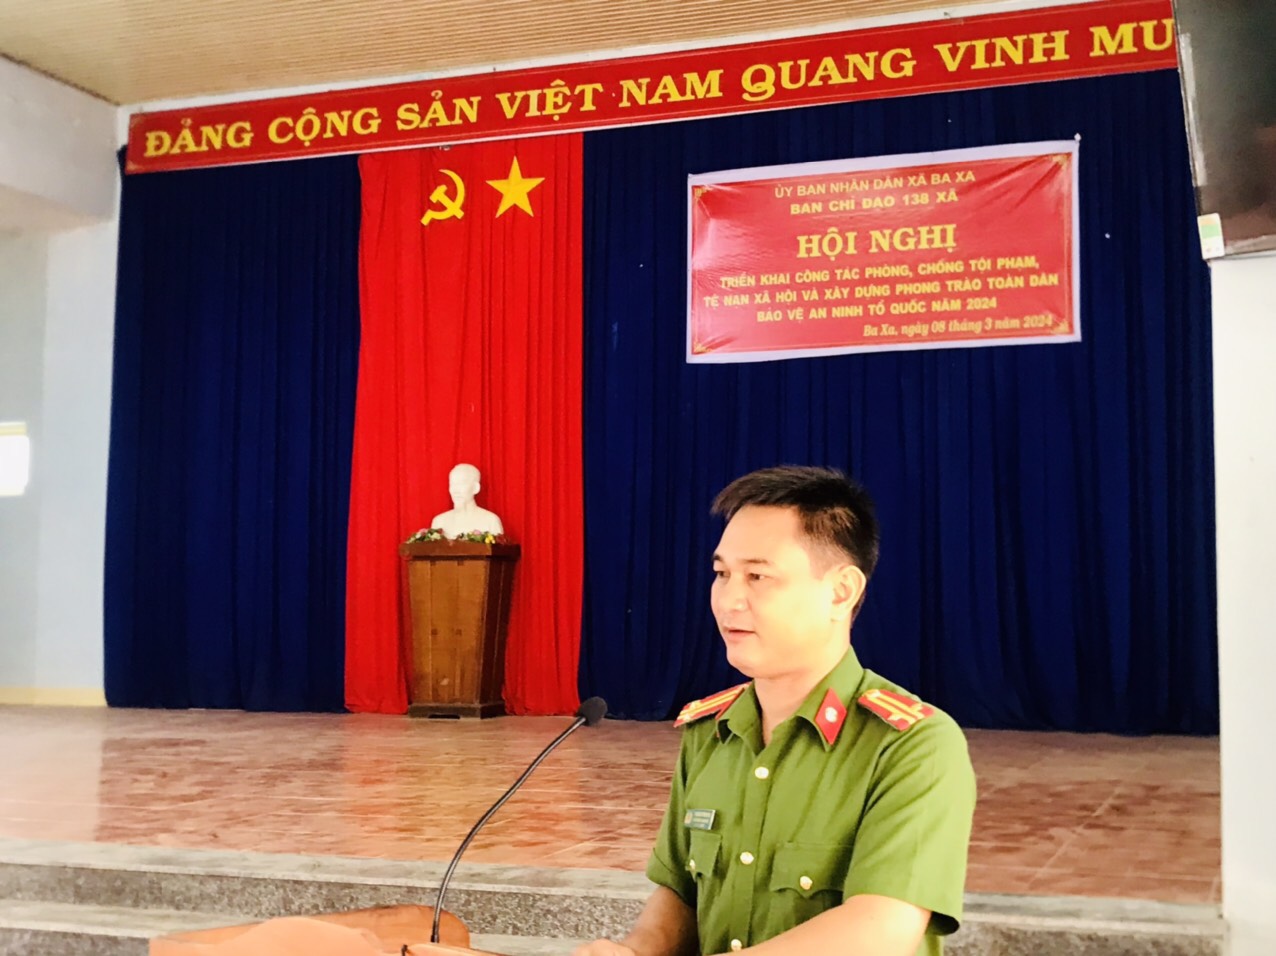 Đ/c Phạm Duy Phương, Phó Trưởng Ban chỉ đạo 138 huyện - Phó Trưởng công an huyện Ba Tơ phát biểu chỉ đạo tại Hội nghị